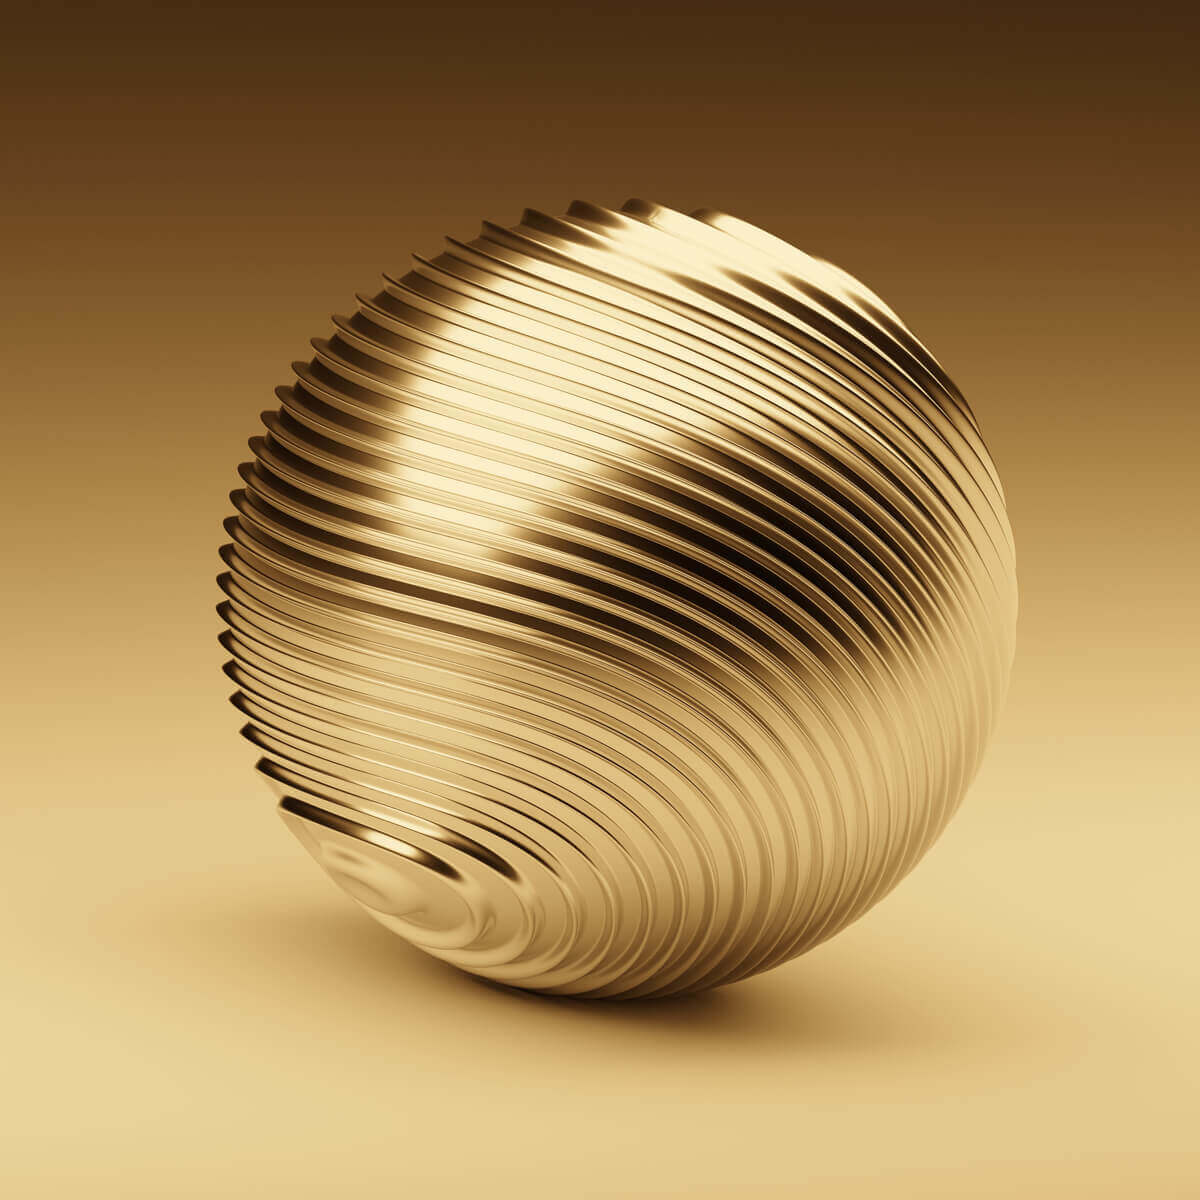 A Golden Ball